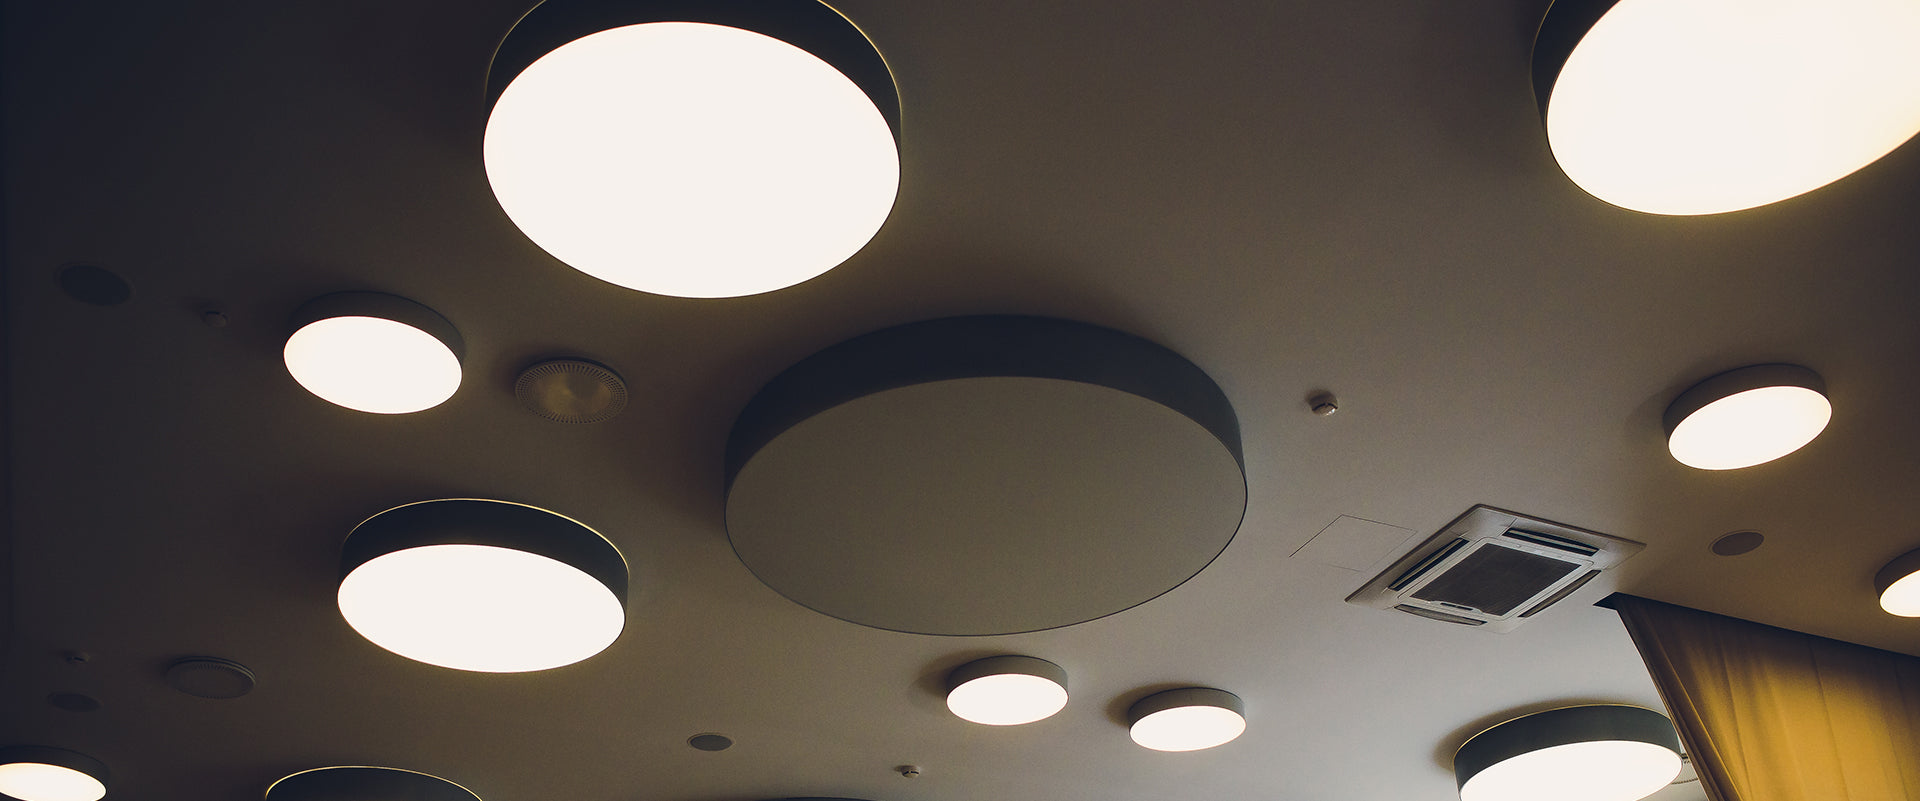 Havit – Lights Indoor Lighting